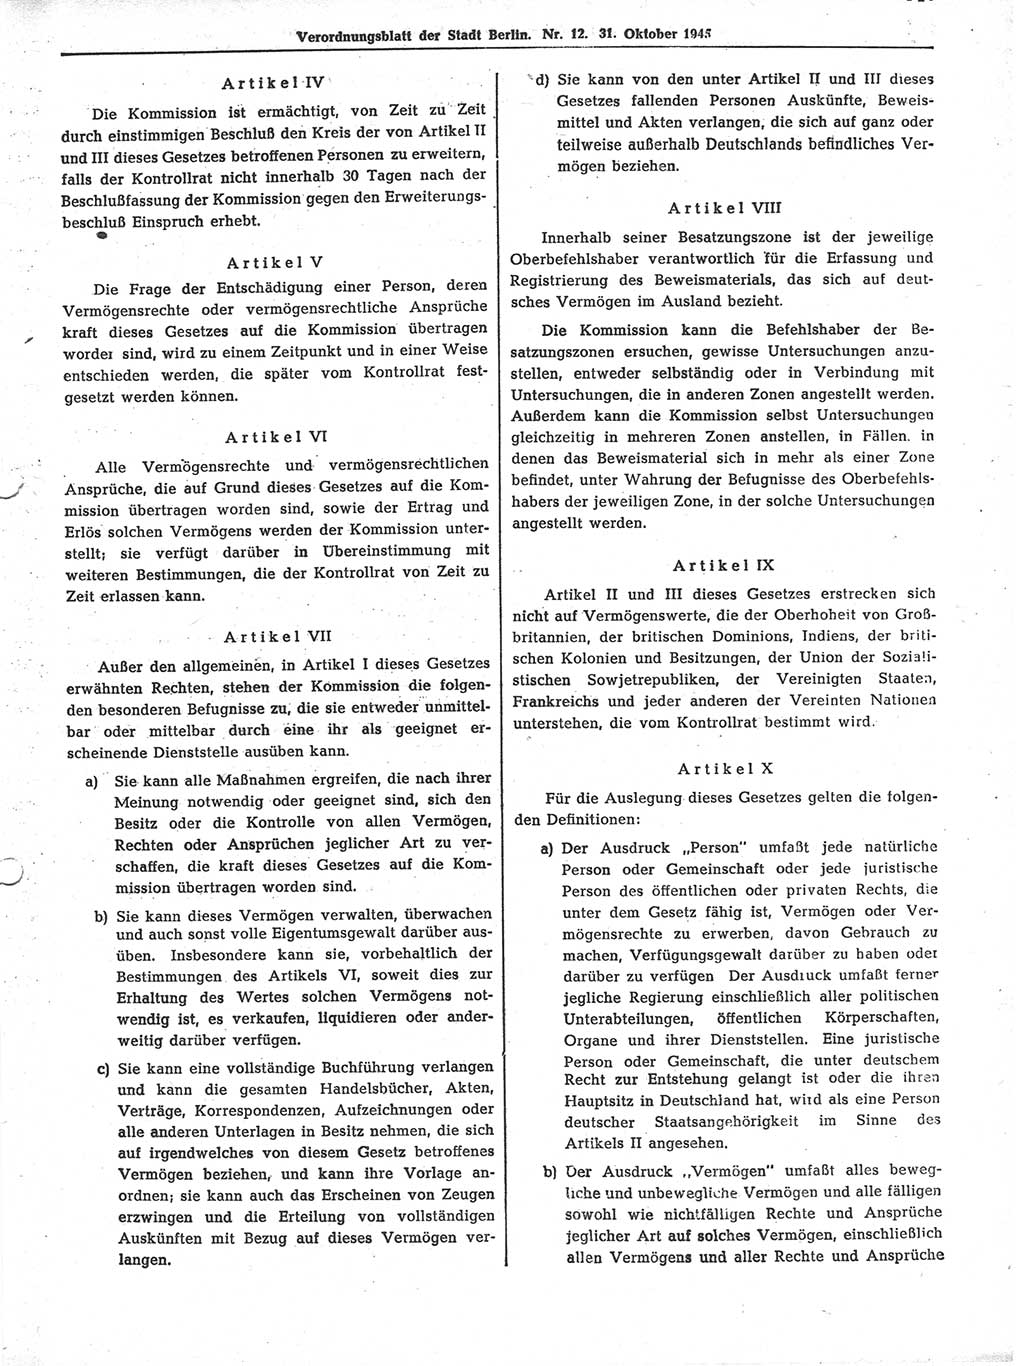 Verordnungsblatt (VOBl.) der Stadt Berlin 1945, Seite 143 (VOBl. Bln. 1945, S. 143)